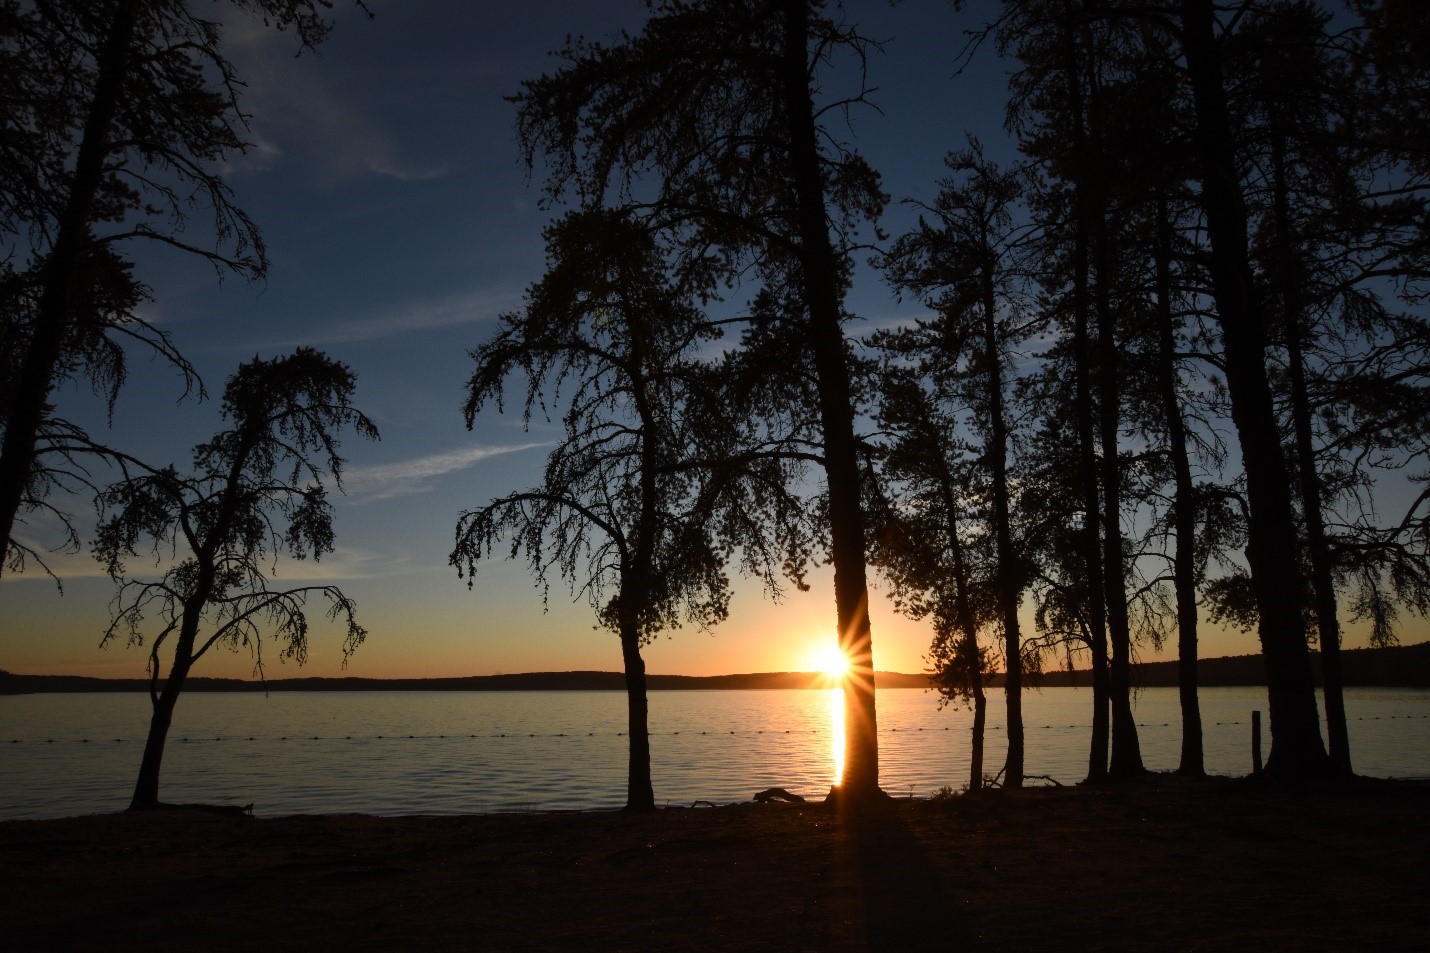 Grands arbres à feuilles persistantes dont la silhouette se dessine en avant-plan du coucher de soleil sur un lac.